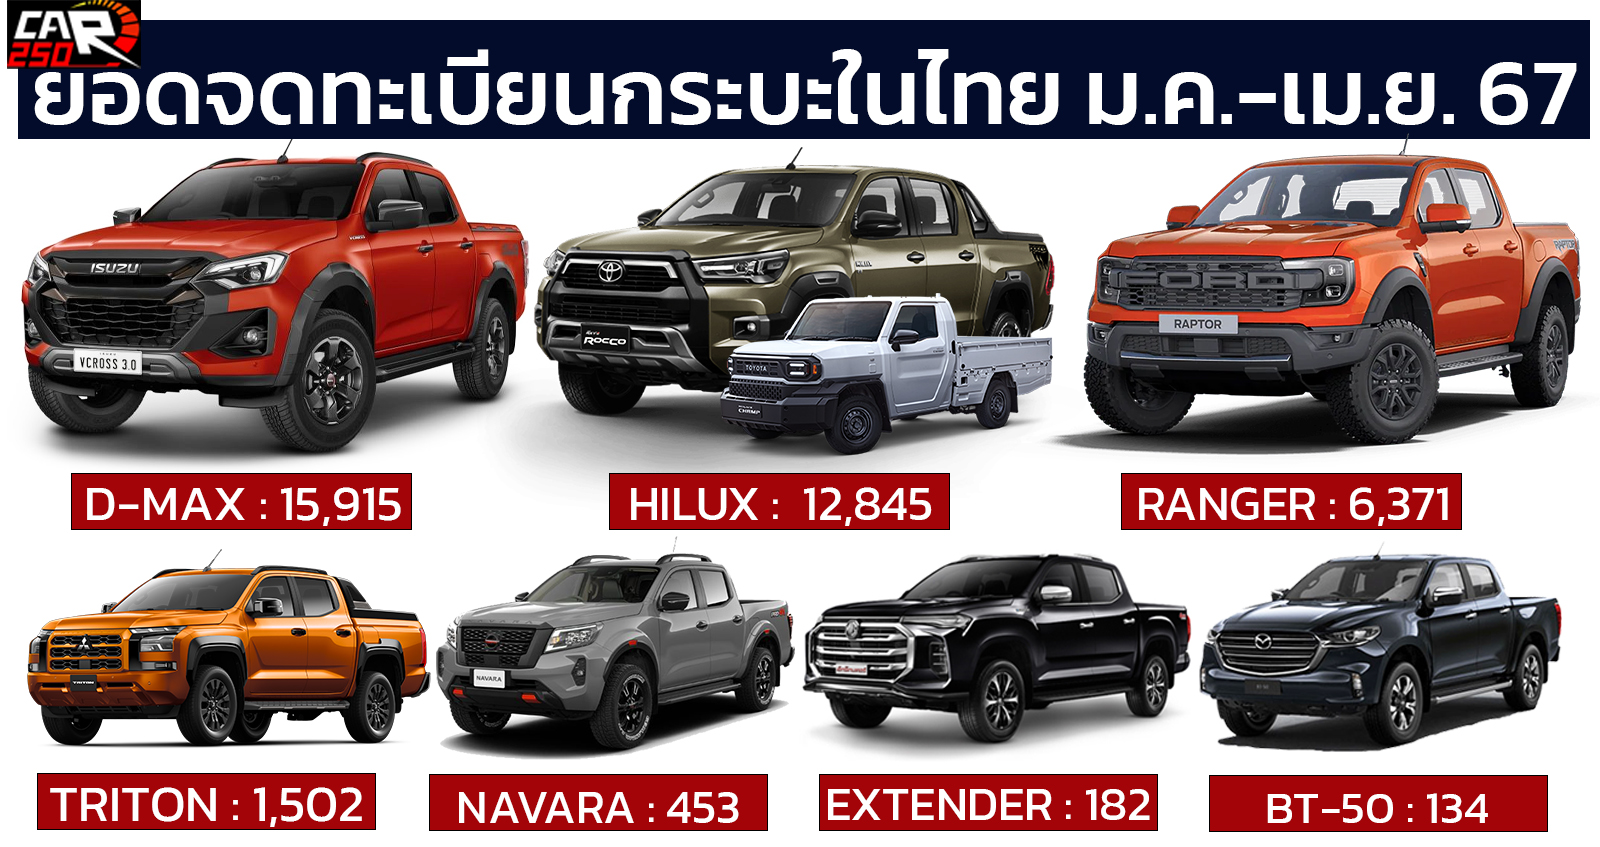 ยอดจดทะเบียนรถกระบะในประเทศไทย มกราคม – เมษายน 2567 รวม 37,220 คัน